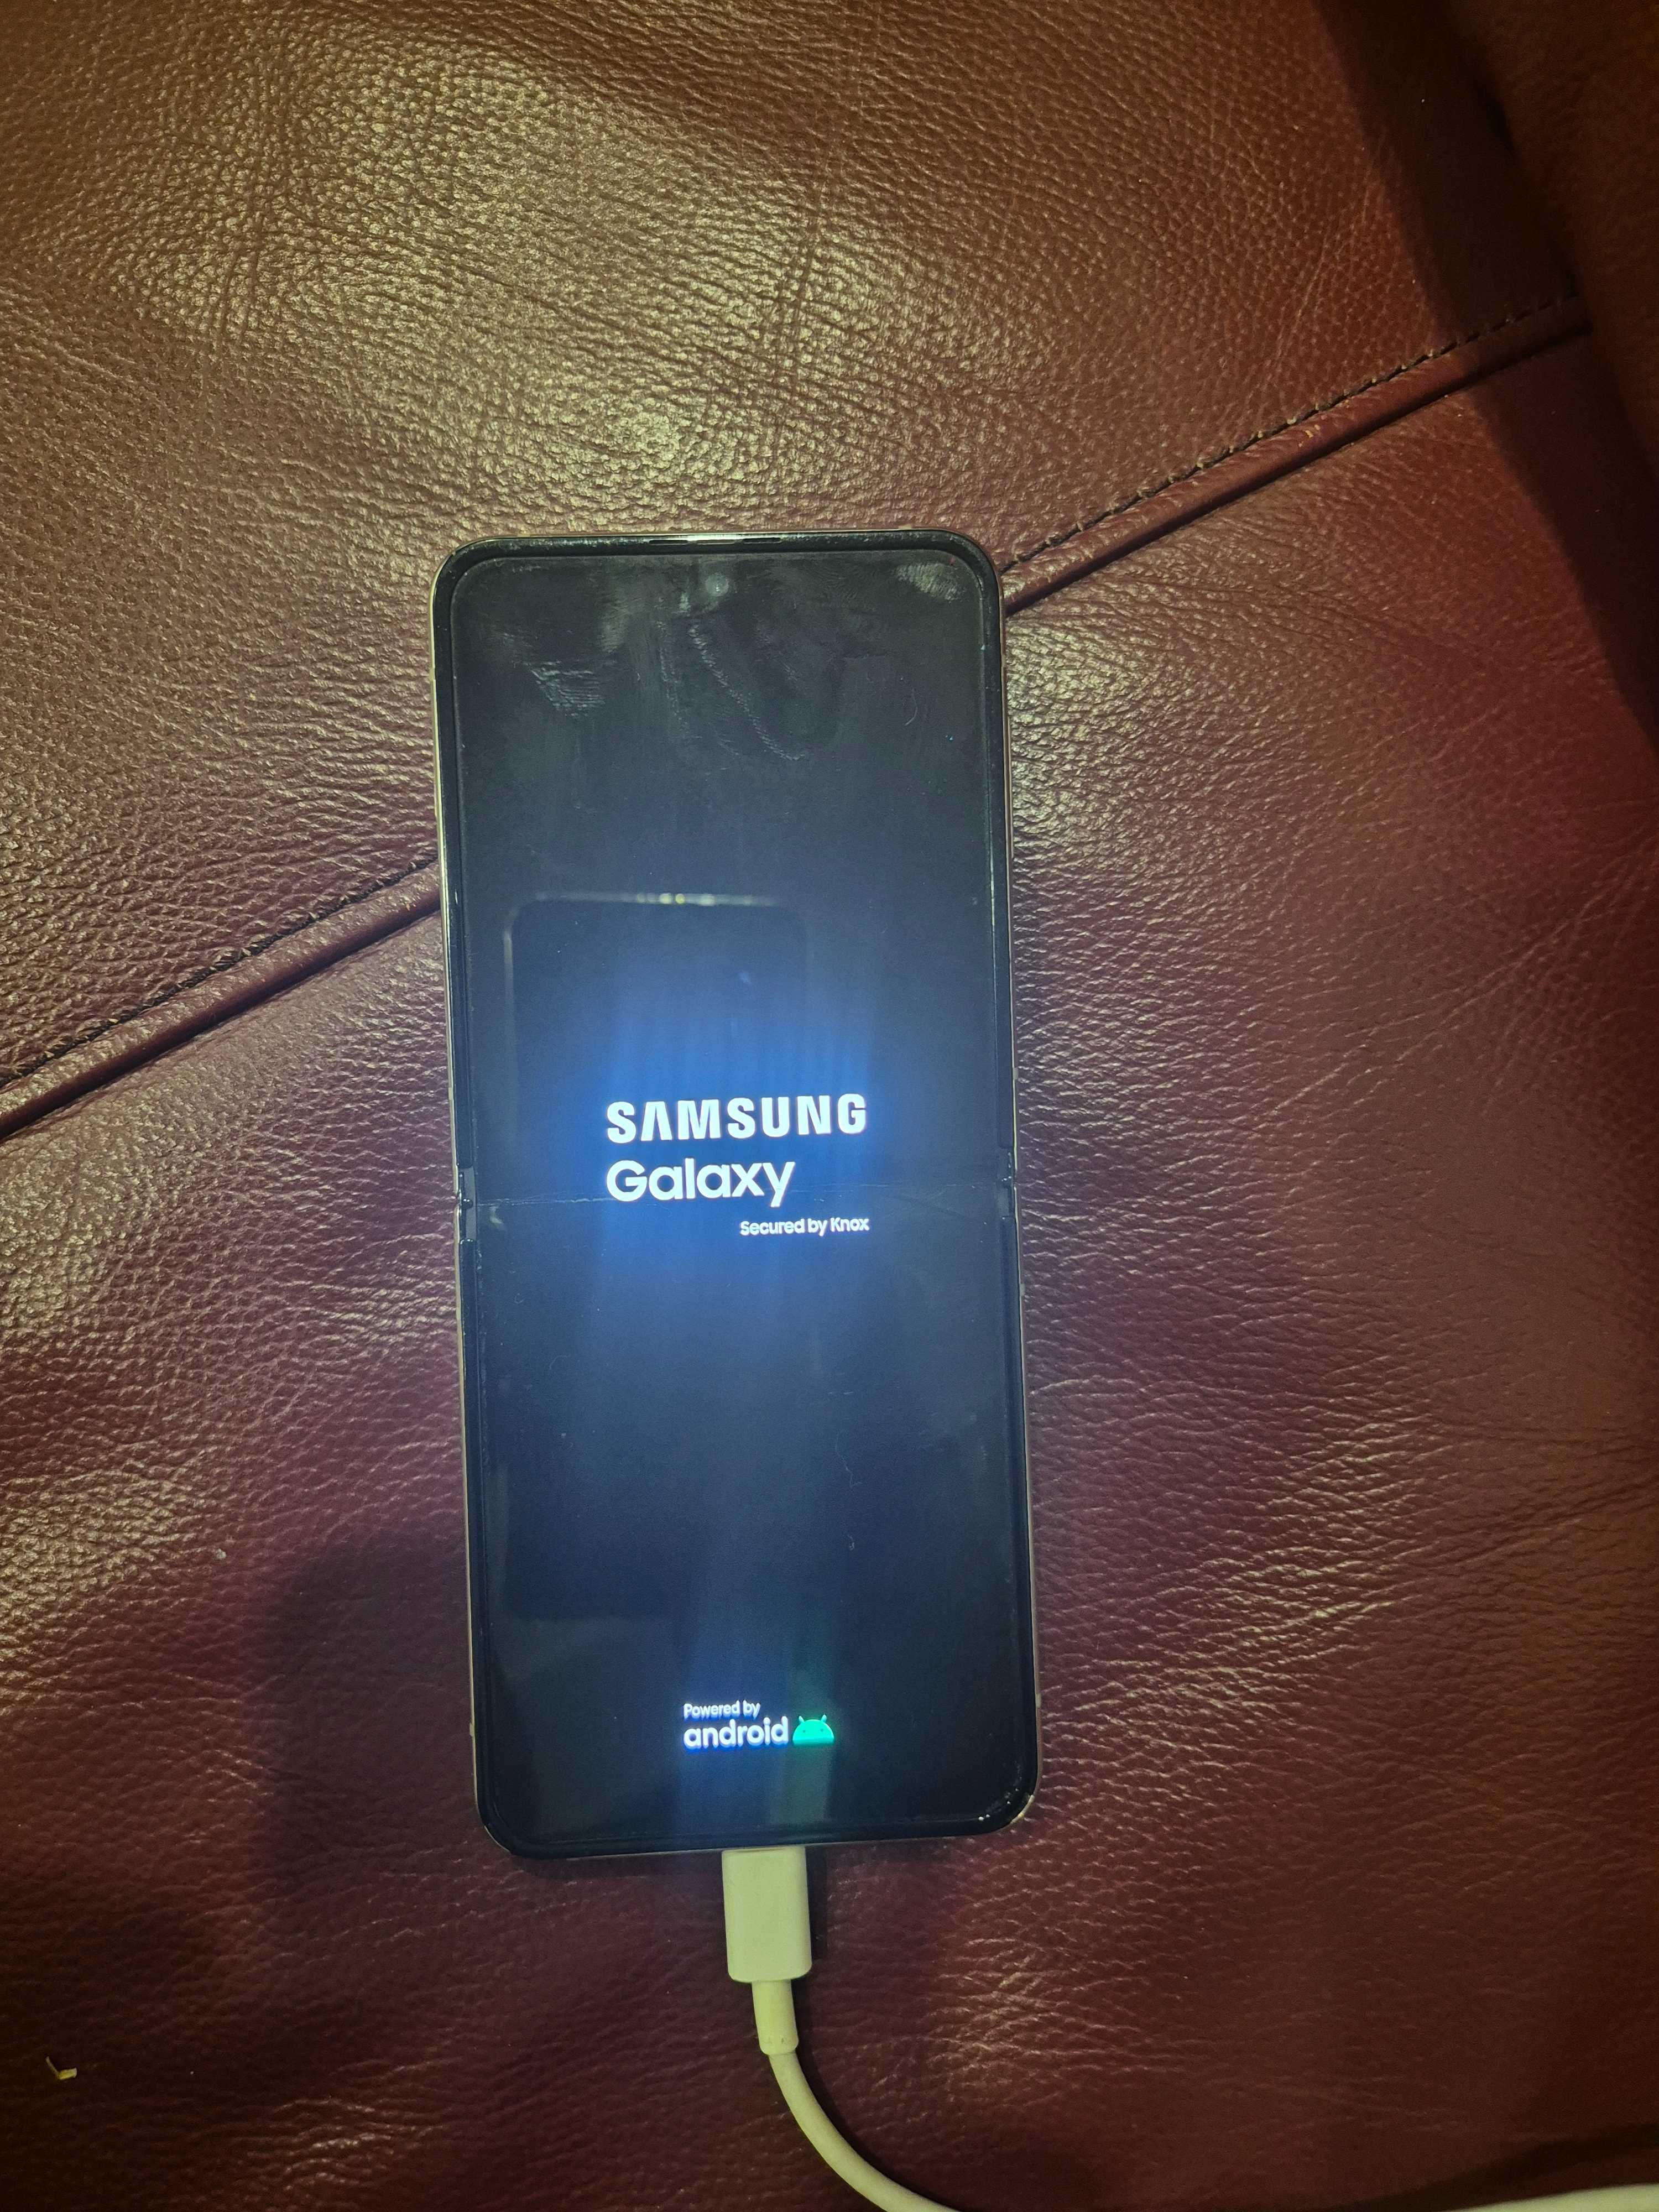 Samsung galaxy Z Flip 4